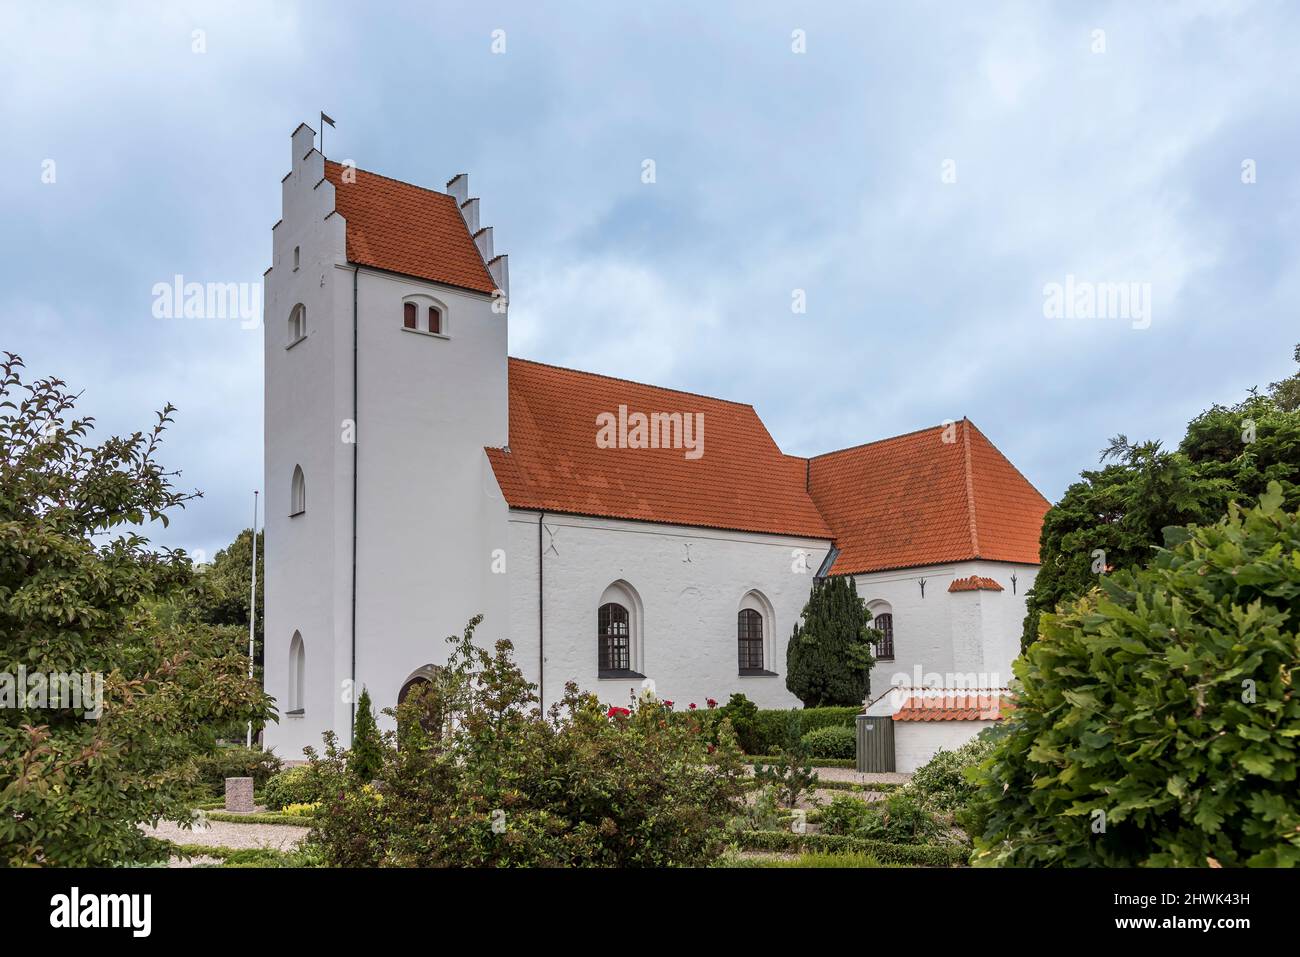 Bianca chiesa scandinava con una torre alta e un tetto di tegole arancioni contro il cielo blu, Orslev, Danimarca, 9 agosto 2021 Foto Stock